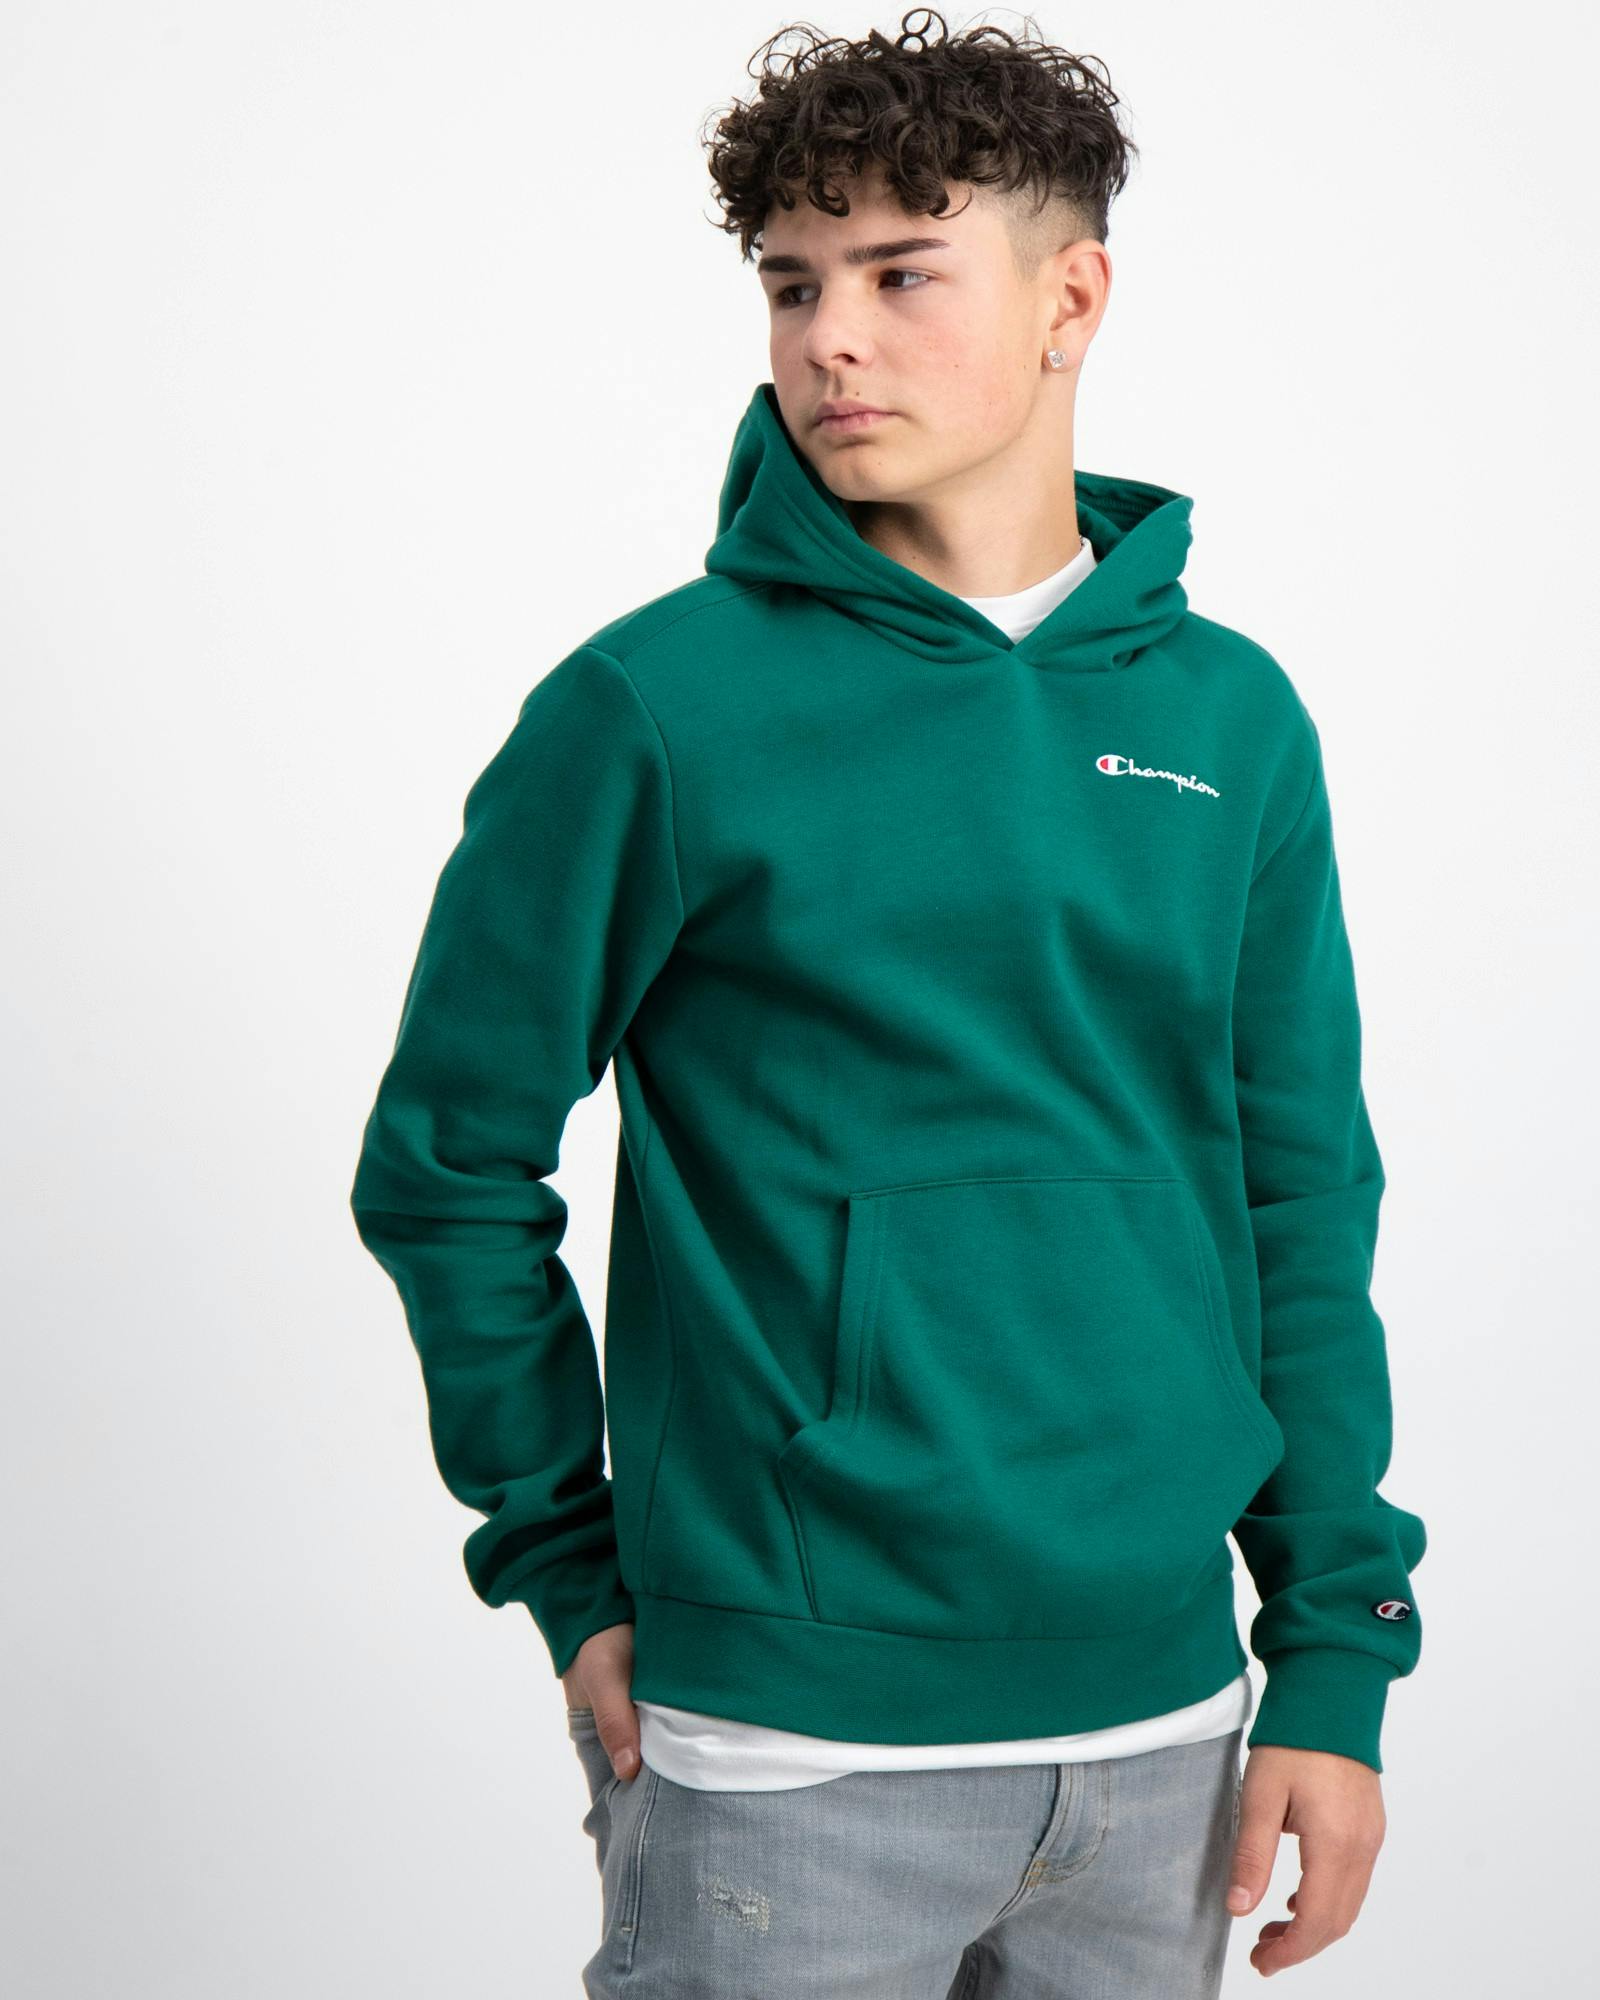 Grün Hooded Sweatshirt für Jungen | Kids Brand Store | Hoodies